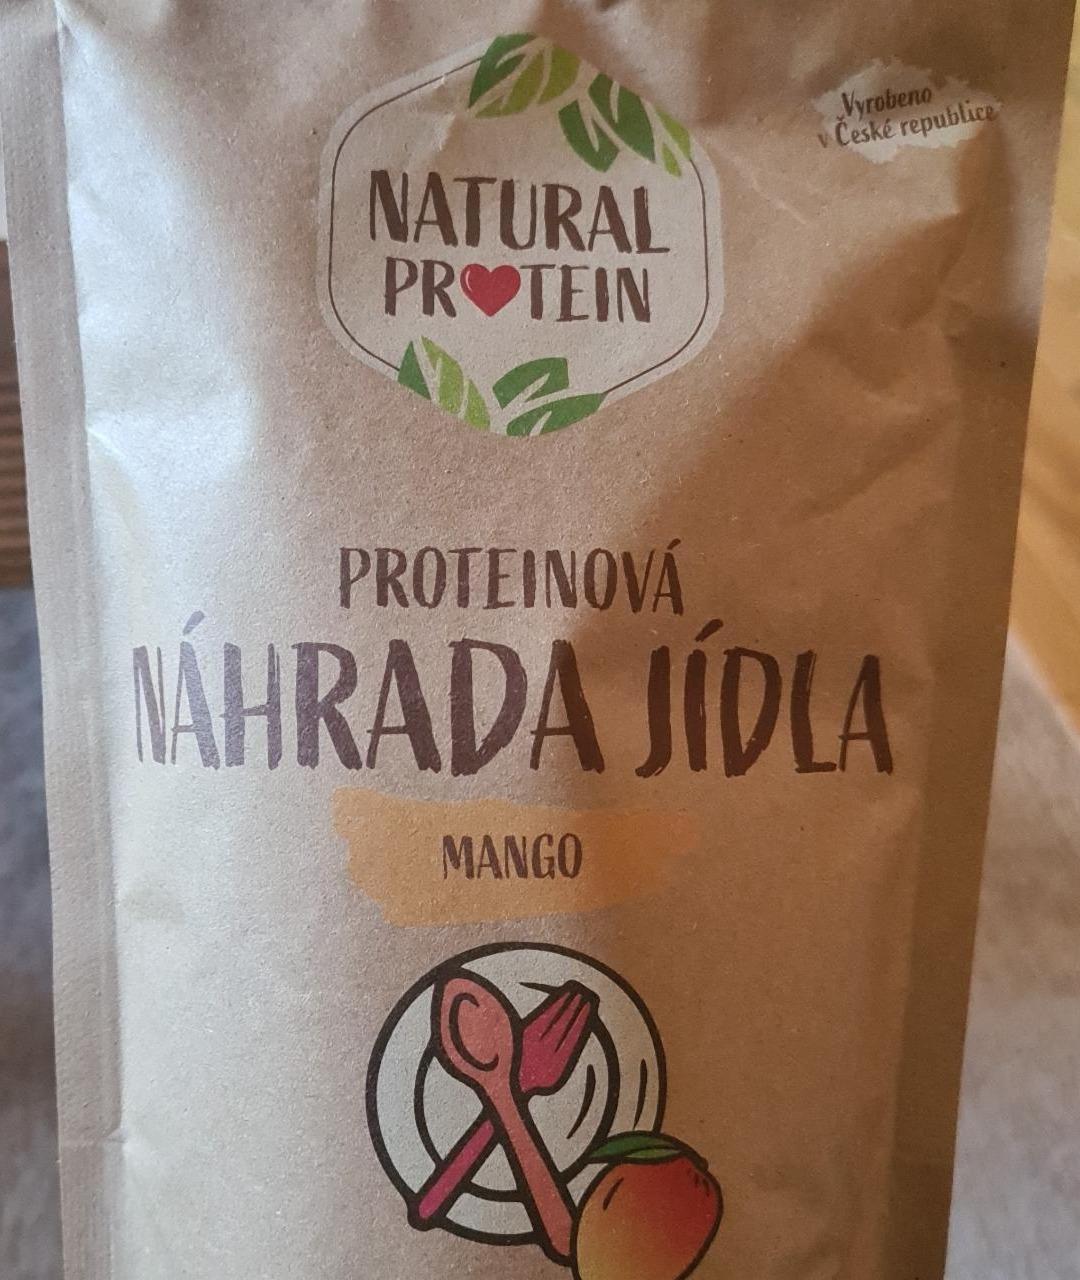 Fotografie - Proteinová náhrada jídla Mango Natural Protein